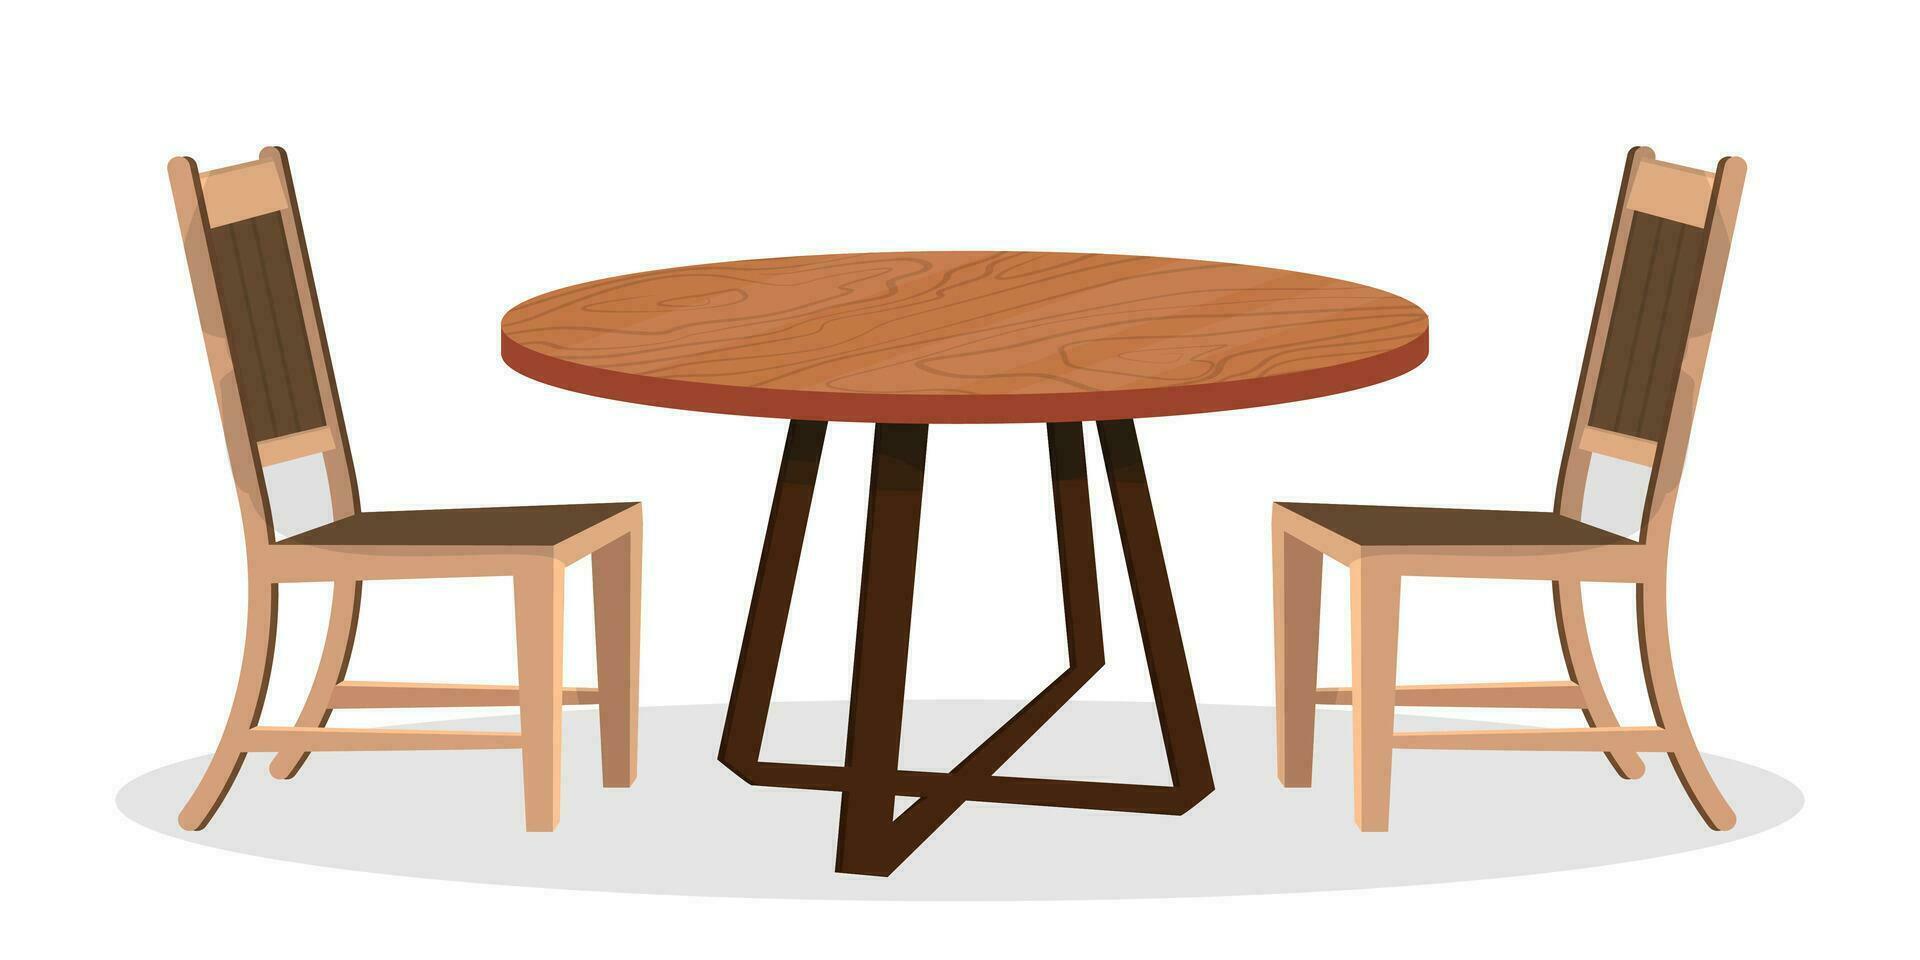 vektor platt illustration av trä- tabell och två stolar på vit bakgrund.